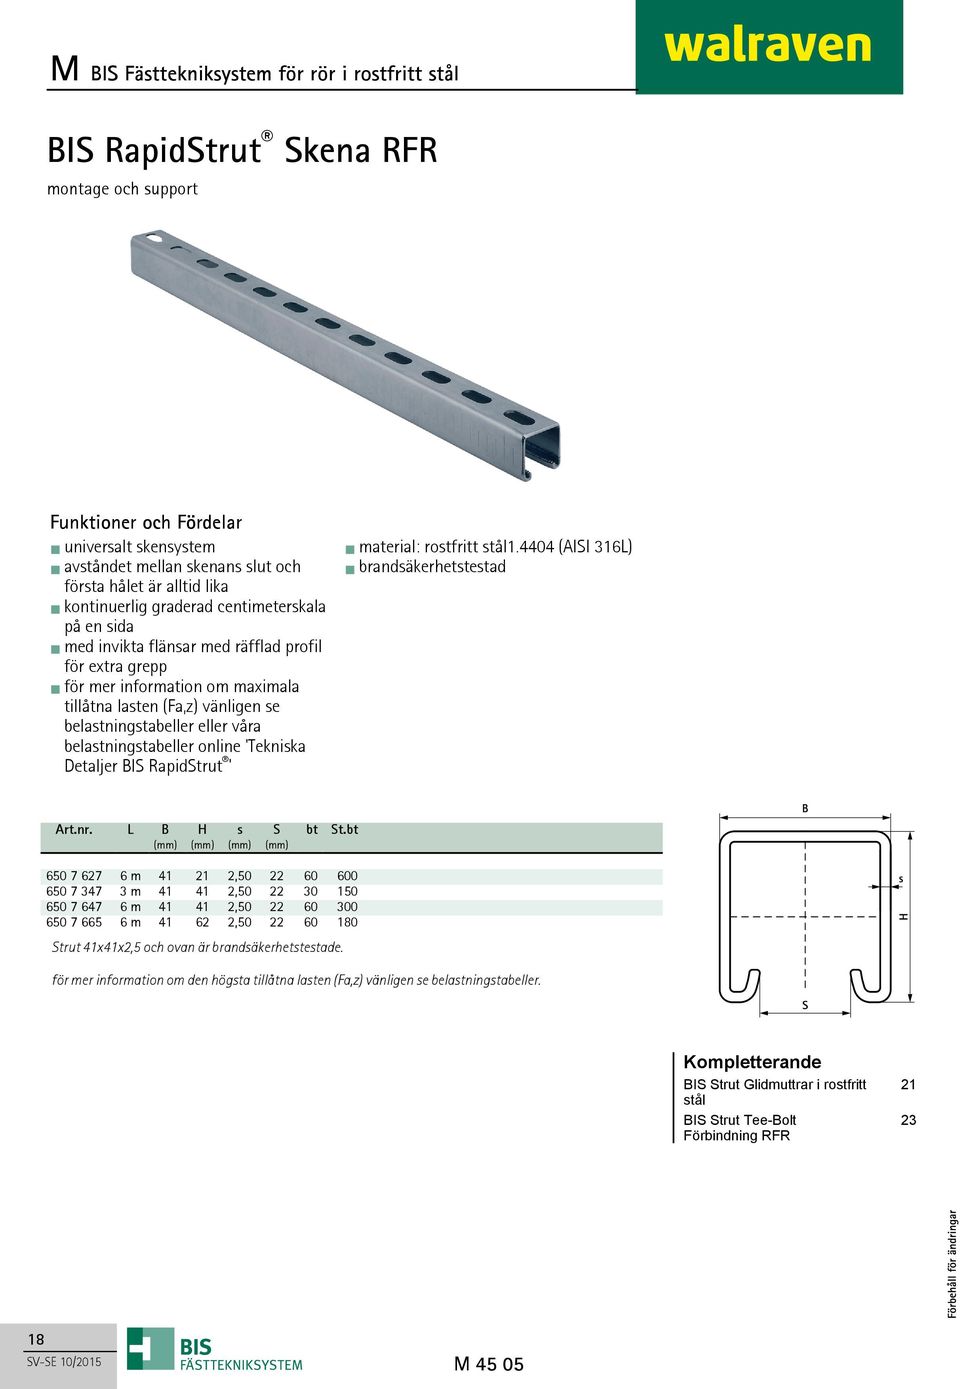 online 'Tekniska Detaljer BIS RapidStrut ' material: rostfritt stål1.4404 (AISI 316L) brandsäkerhetstestad Art.nr. L B H s S bt St.